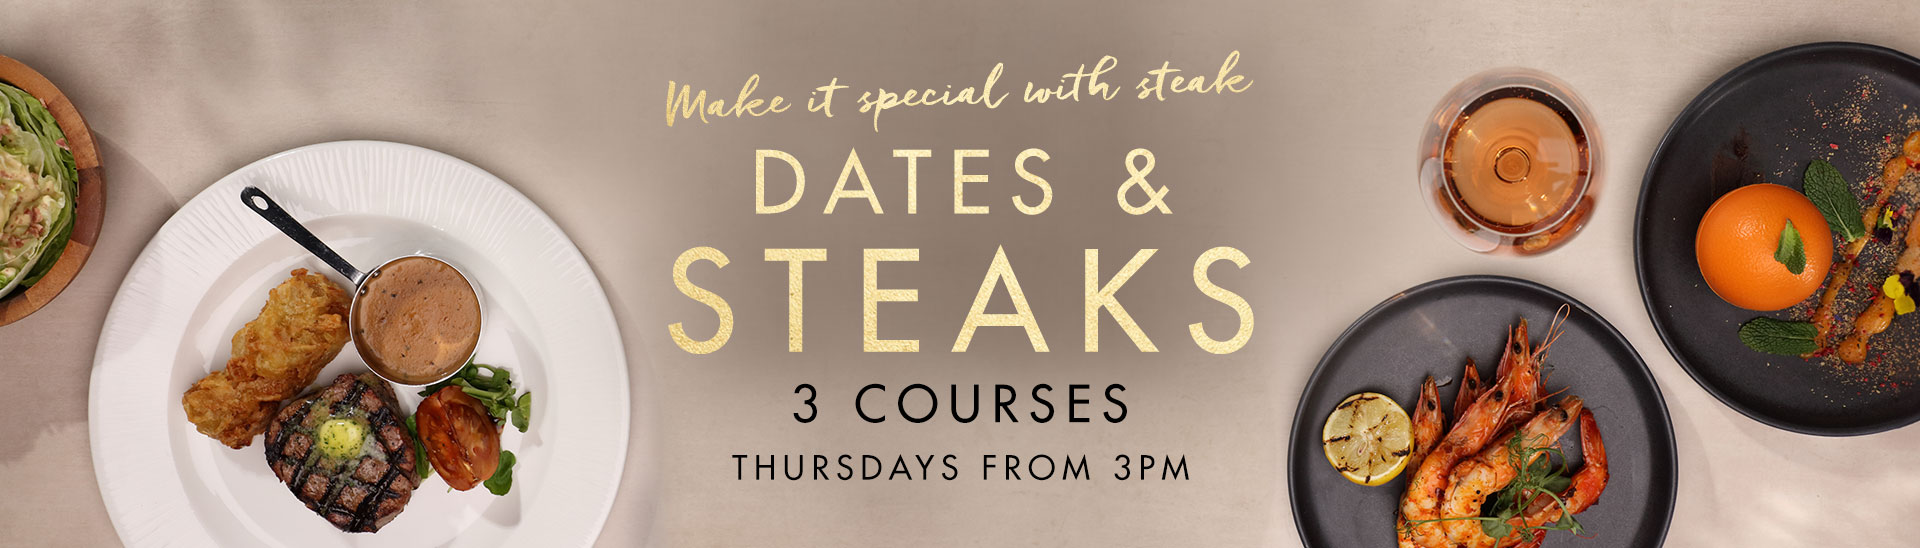 Dates & Steaks at Miller & Carter Glasgow